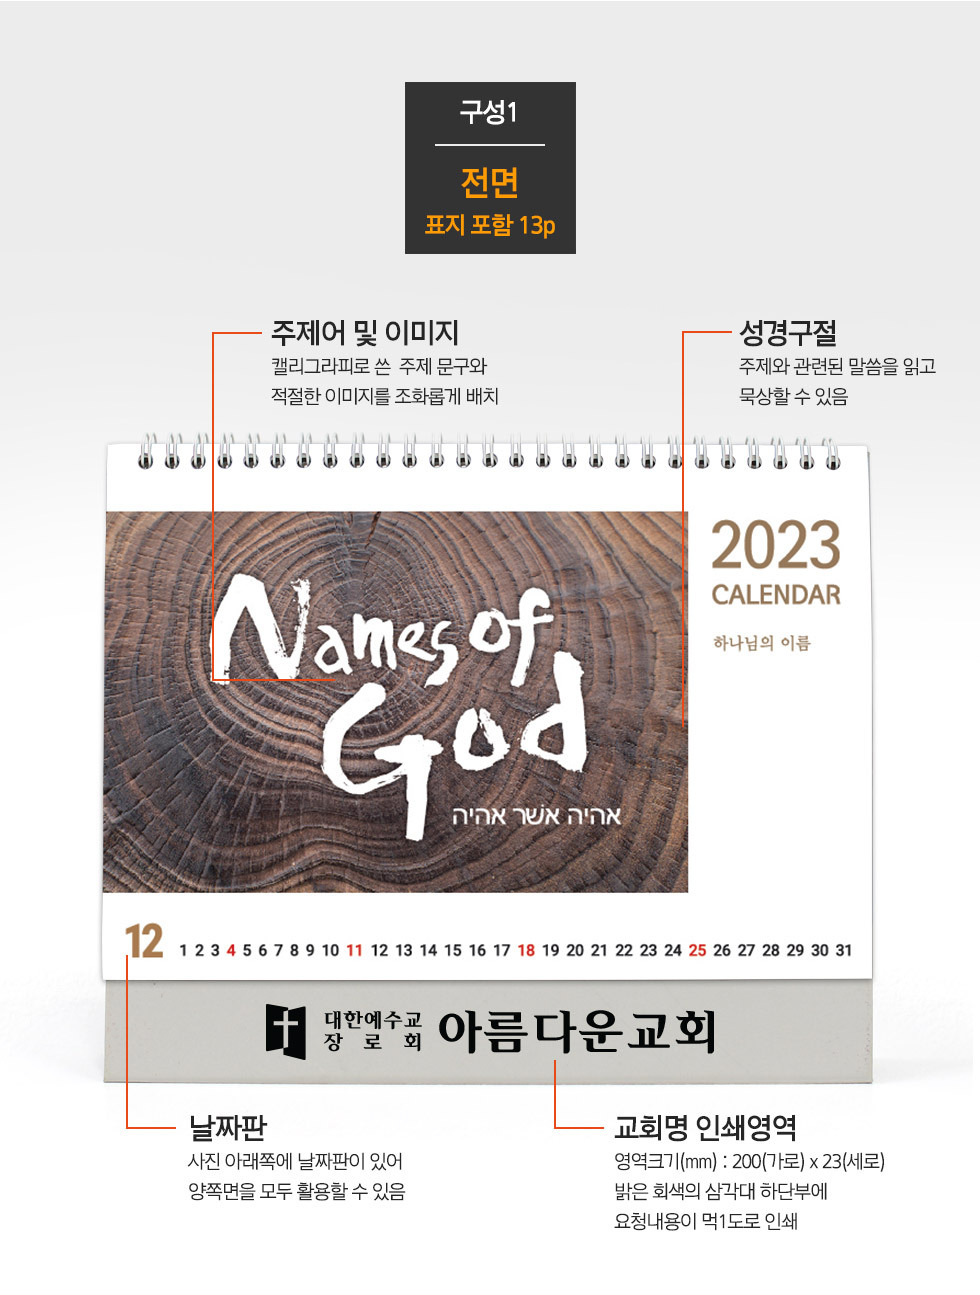 2023년 교회달력 탁상캘린더 하나님의이름 Names of God 구성1 전면